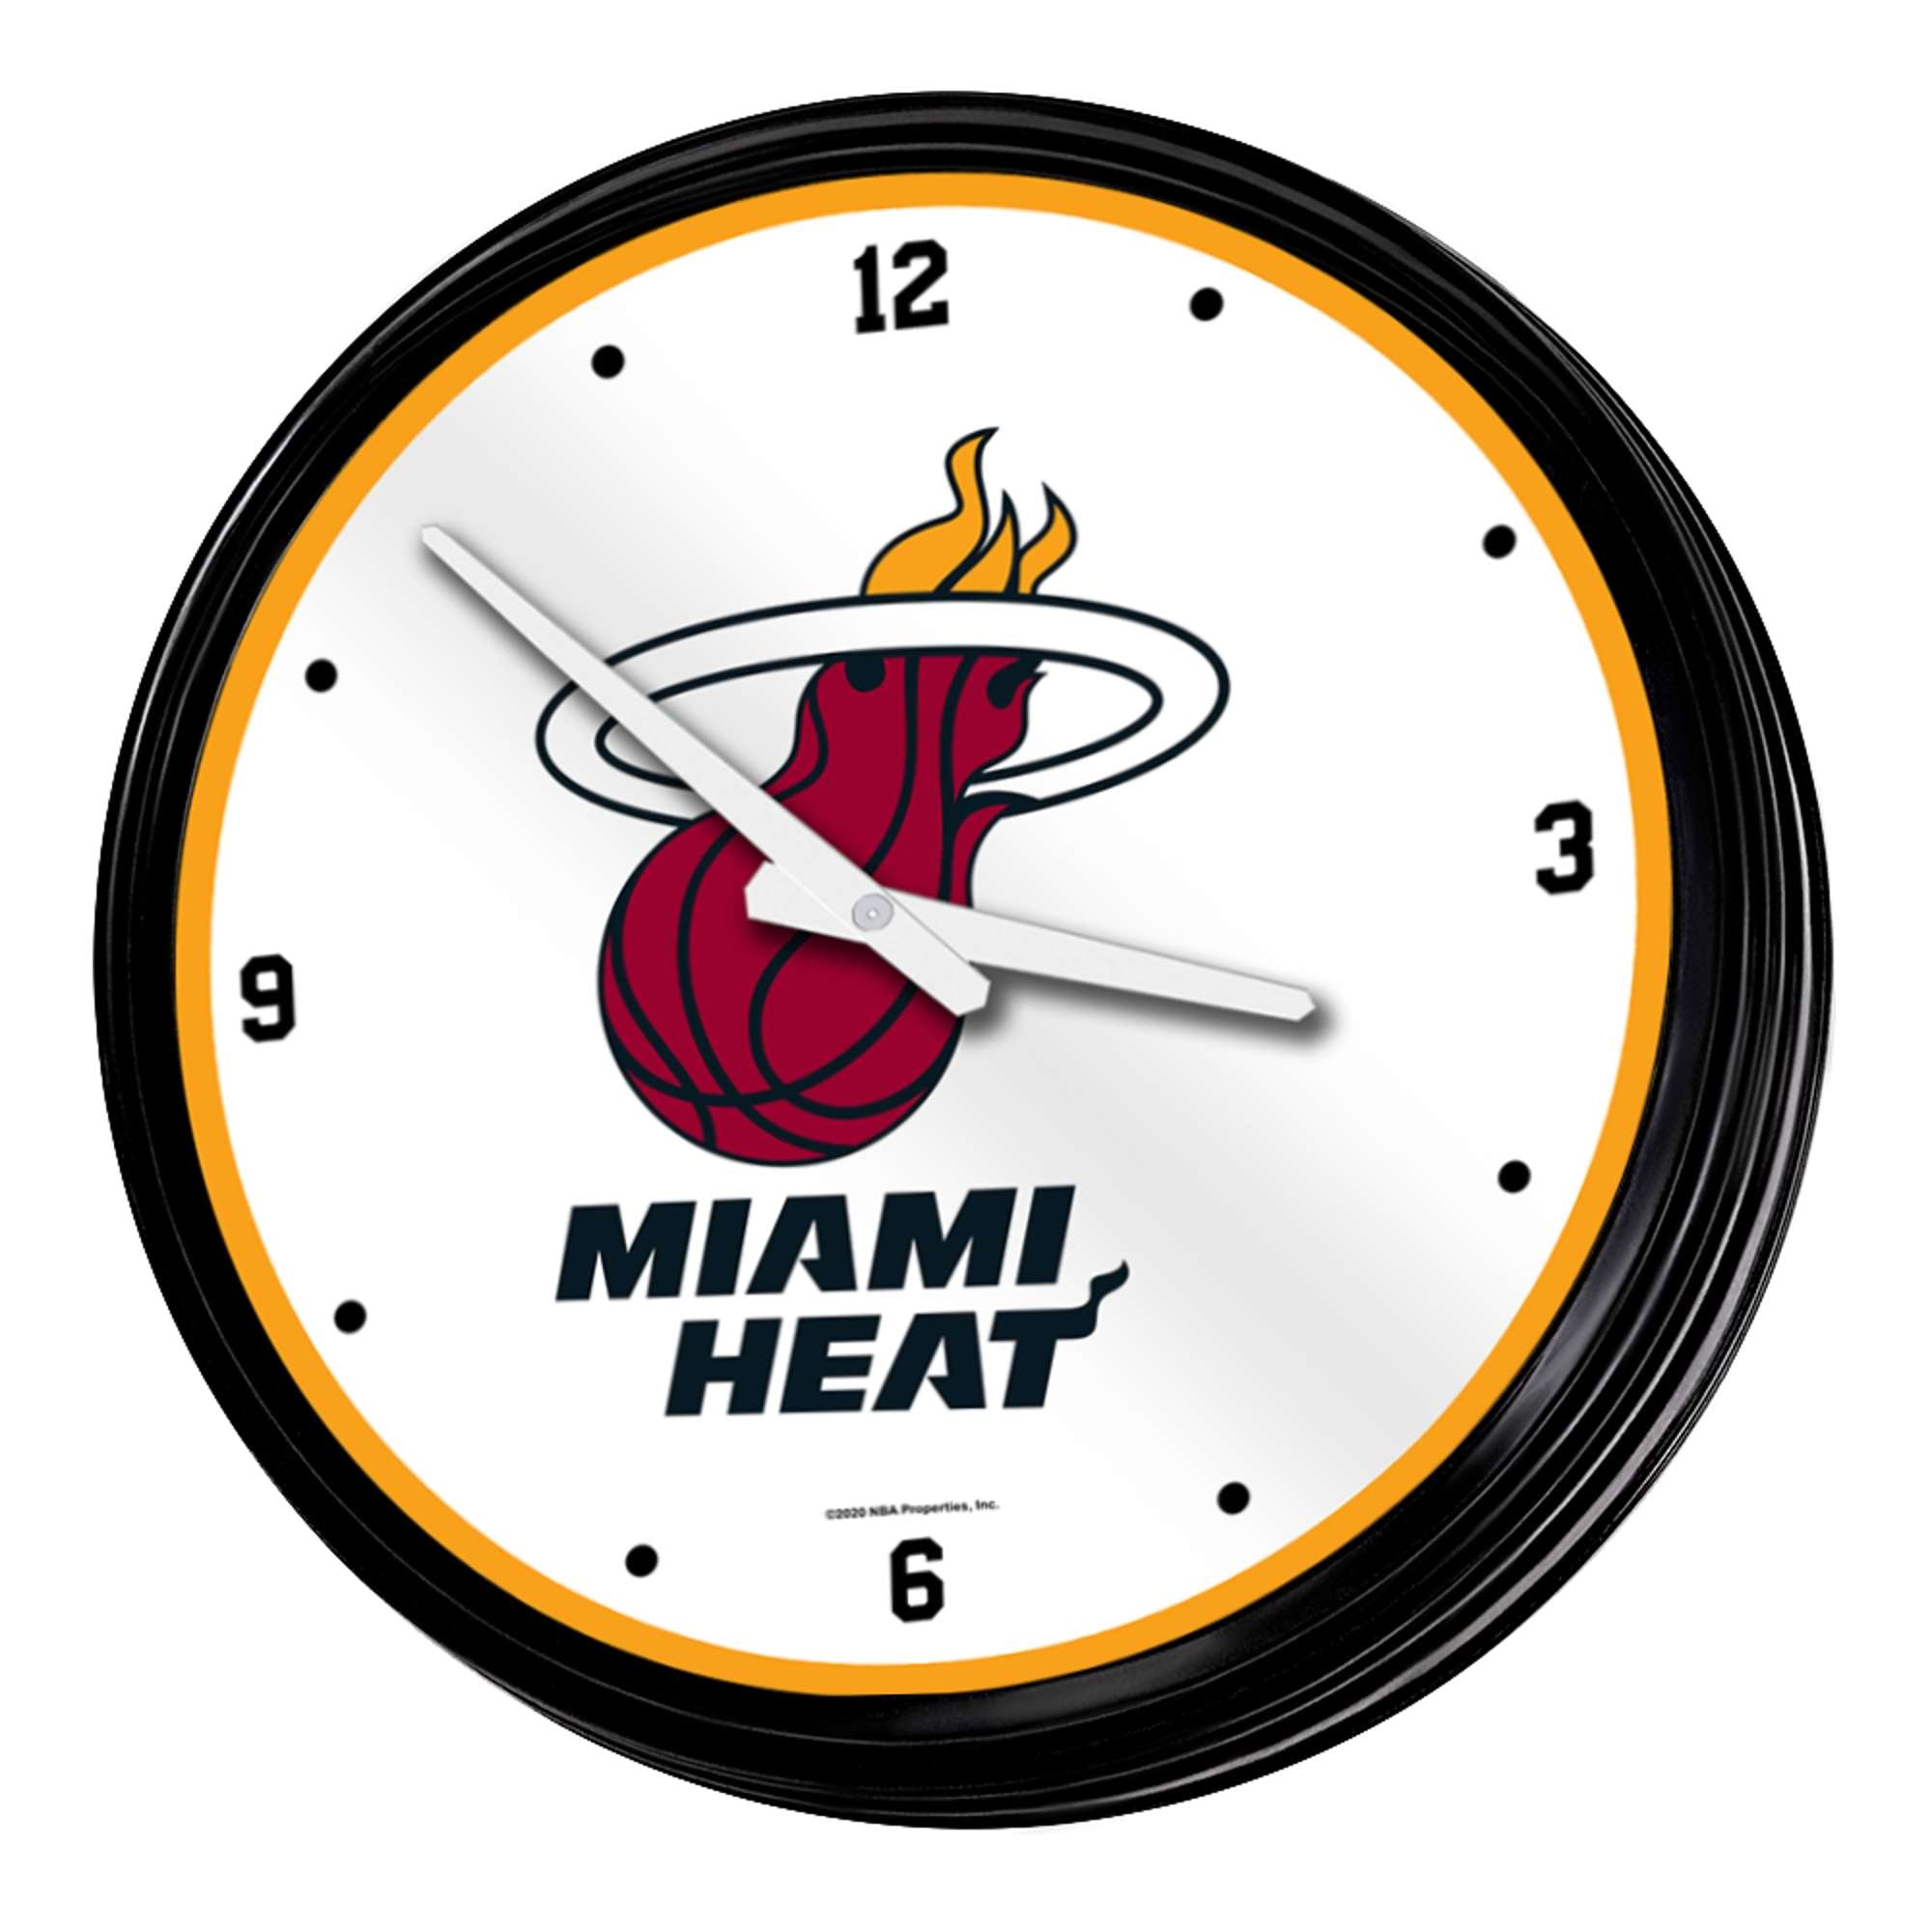 Miami Heat: Retro Lighted Wall Clock